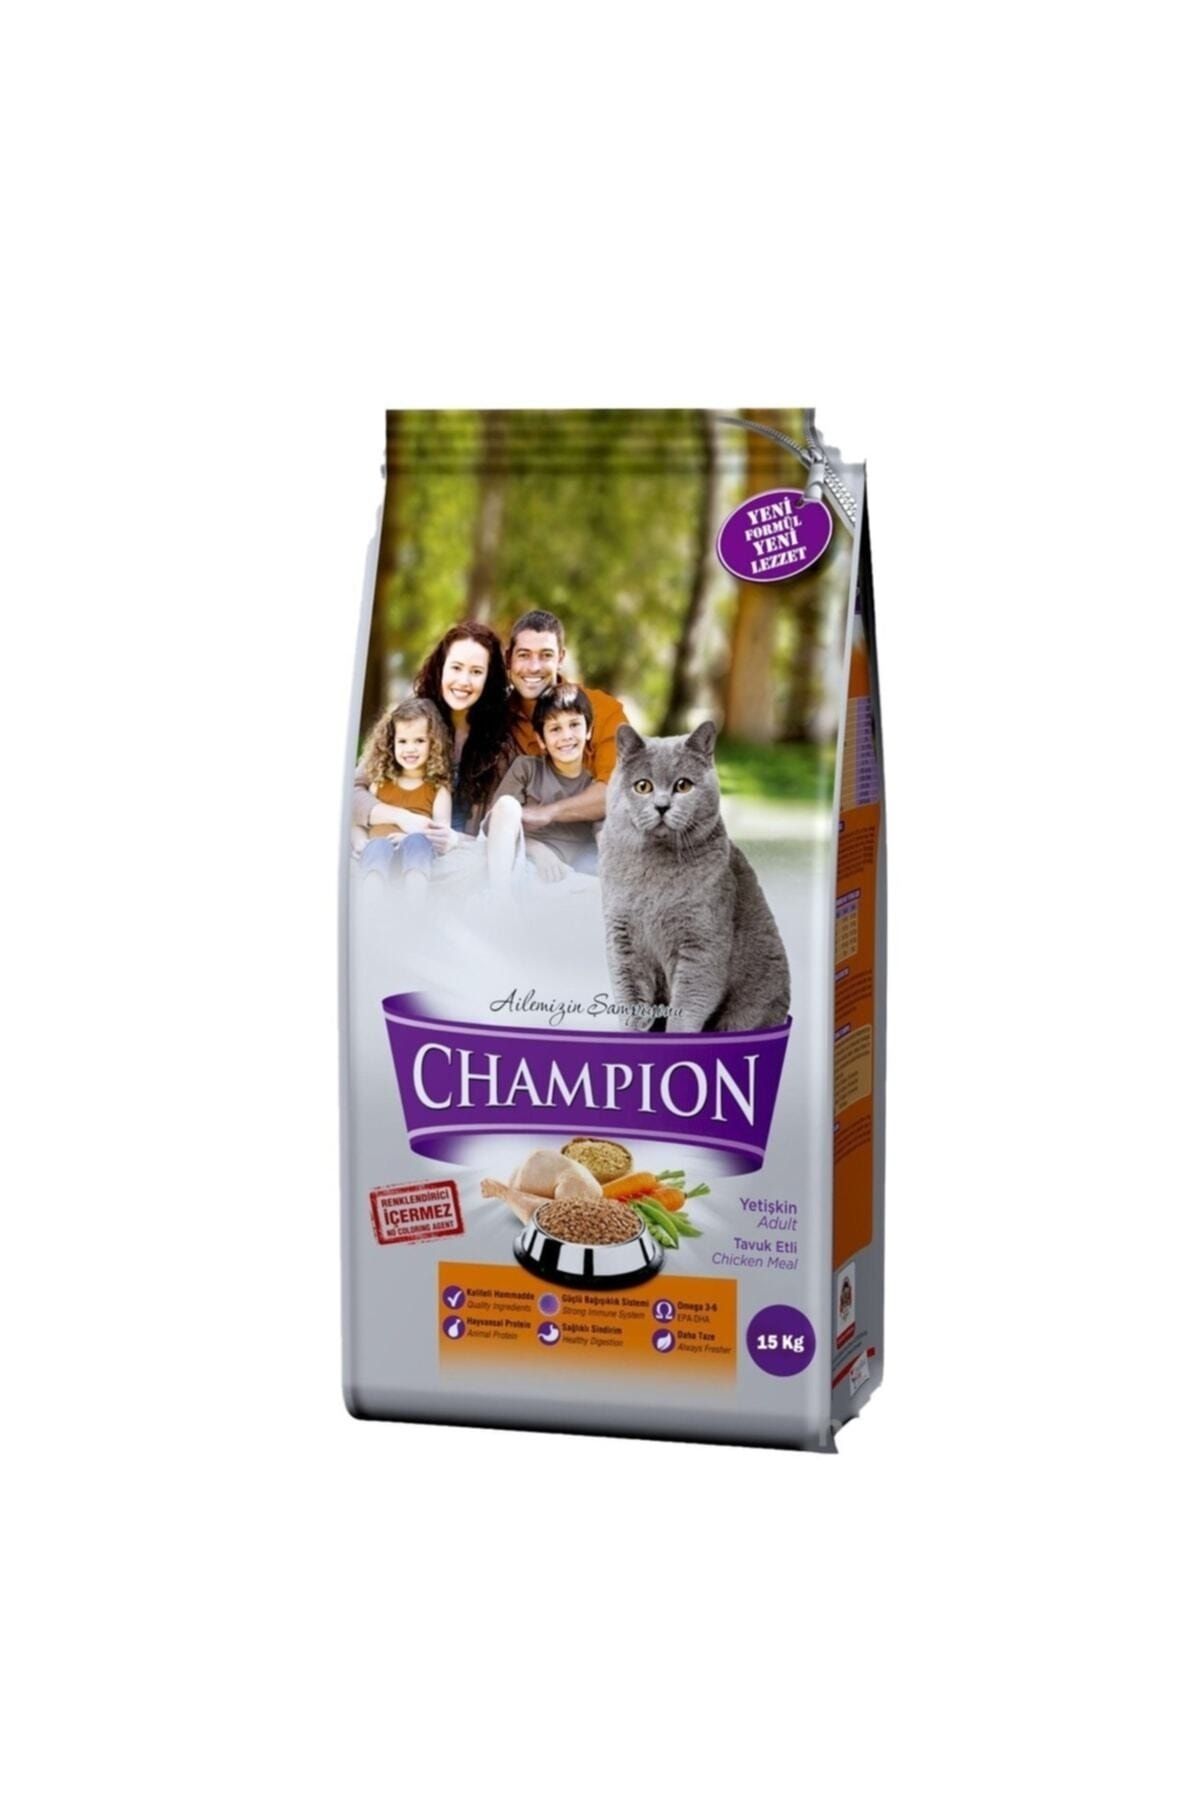 Champion 1 Champion Tavuk Etli Yetişkin Kedi Maması 15 Kg